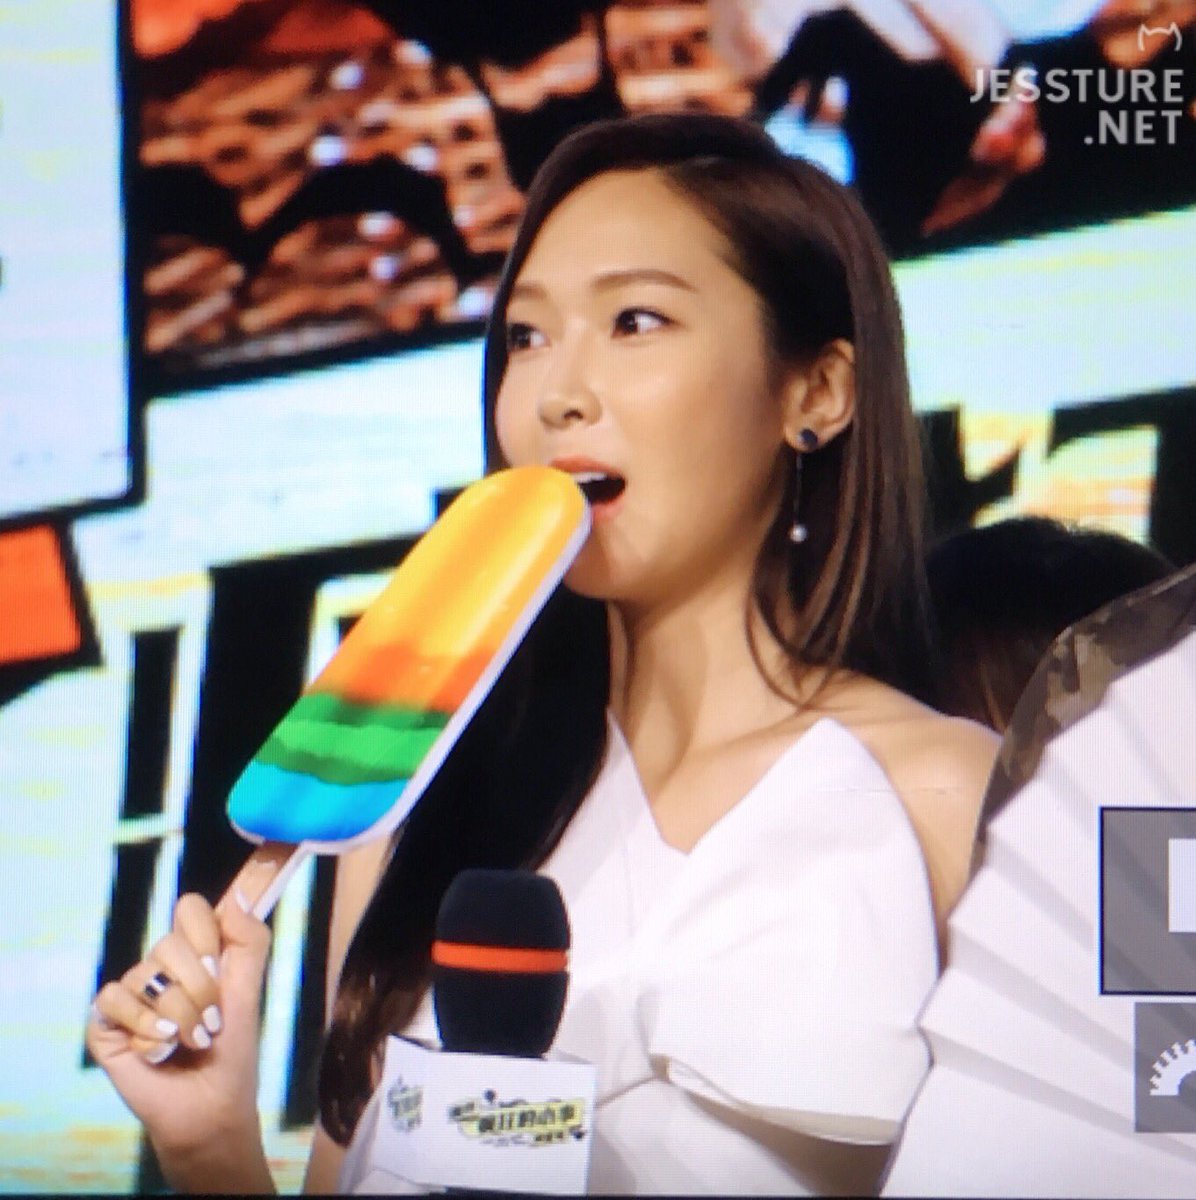 [PIC][08-08-2016]Jessica khởi hành đi Bắc Kinh – Trung Quốc để tham dự chuỗi hoạt động quảng bá cho Movie "I Love That Crazy Little Thing" vào chiều nay CpZqFVOUMAAKUJN